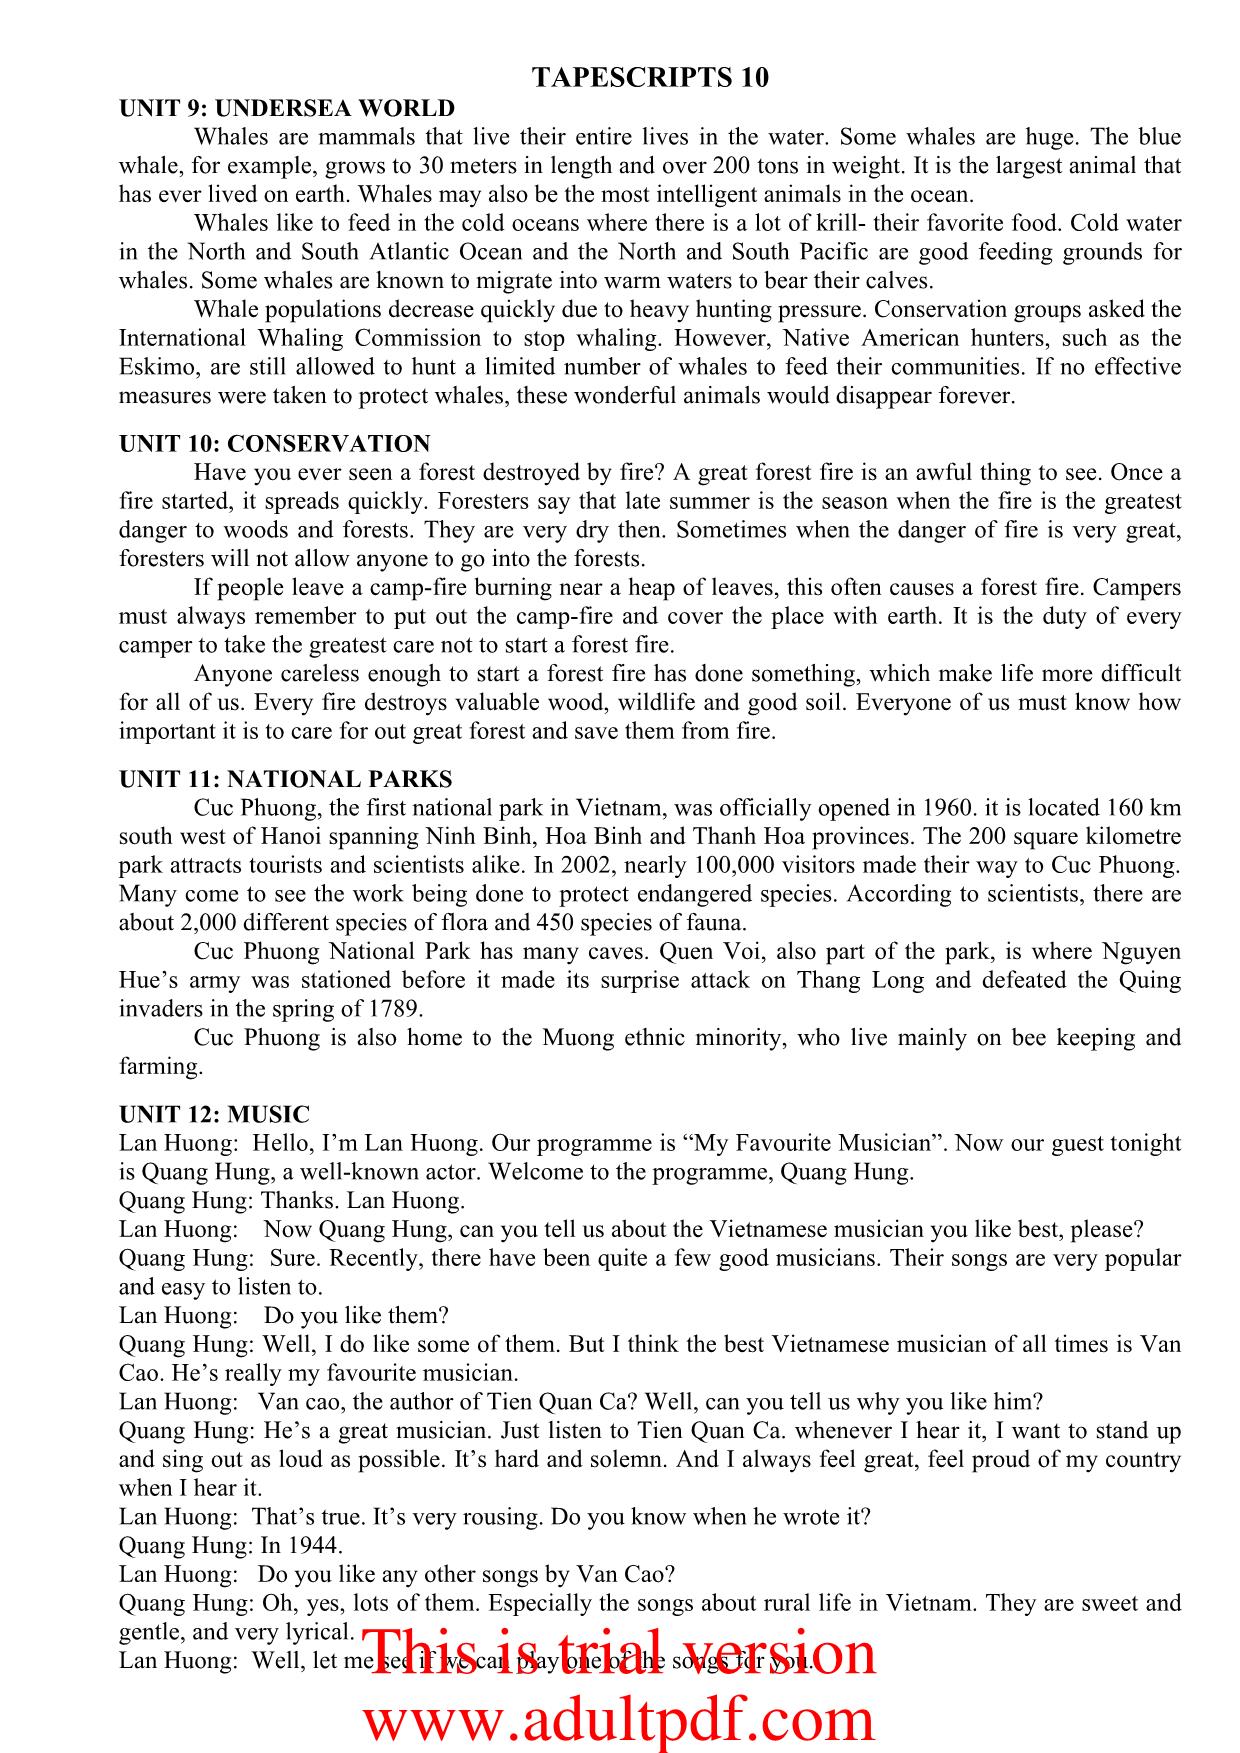 Tiếng Anh - Tapescripts 10 trang 3